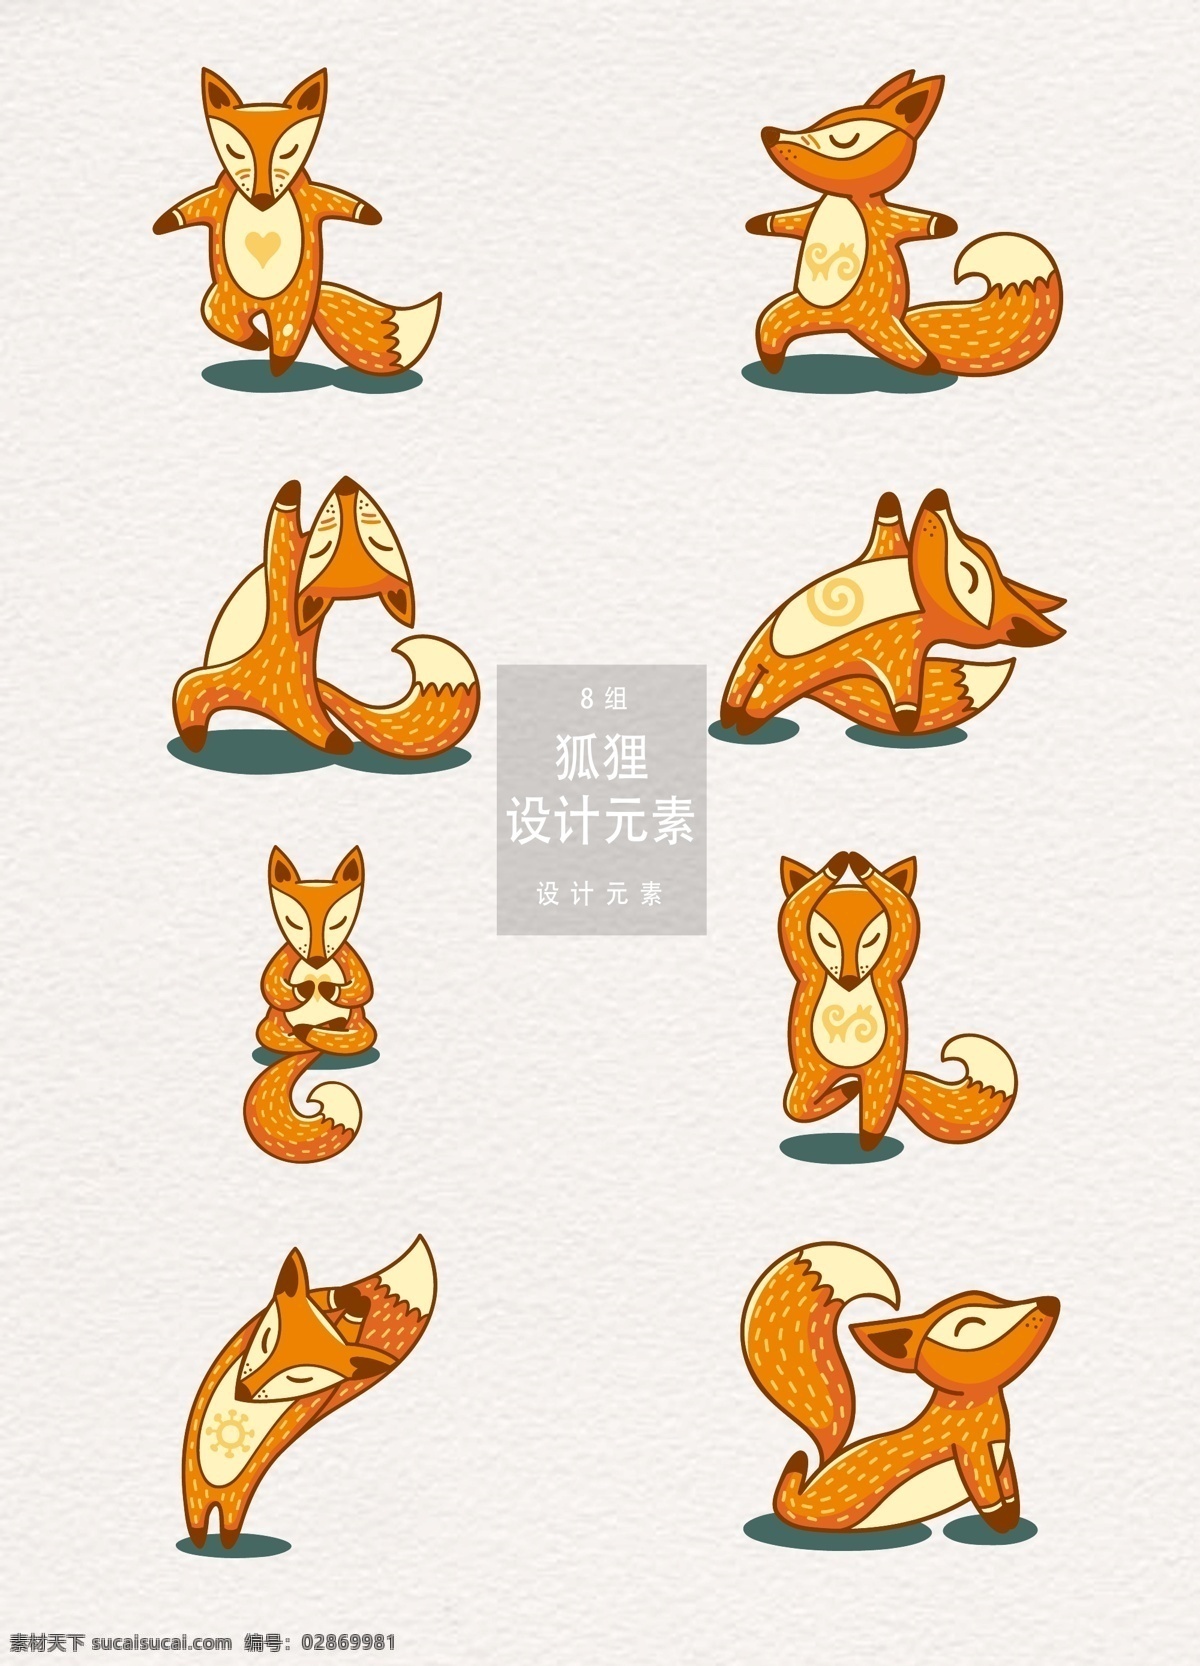 手绘 卡通 狐狸 元素 瑜伽 矢量素材 动物 卡通动物 手绘狐狸 卡通狐狸 瑜伽动作